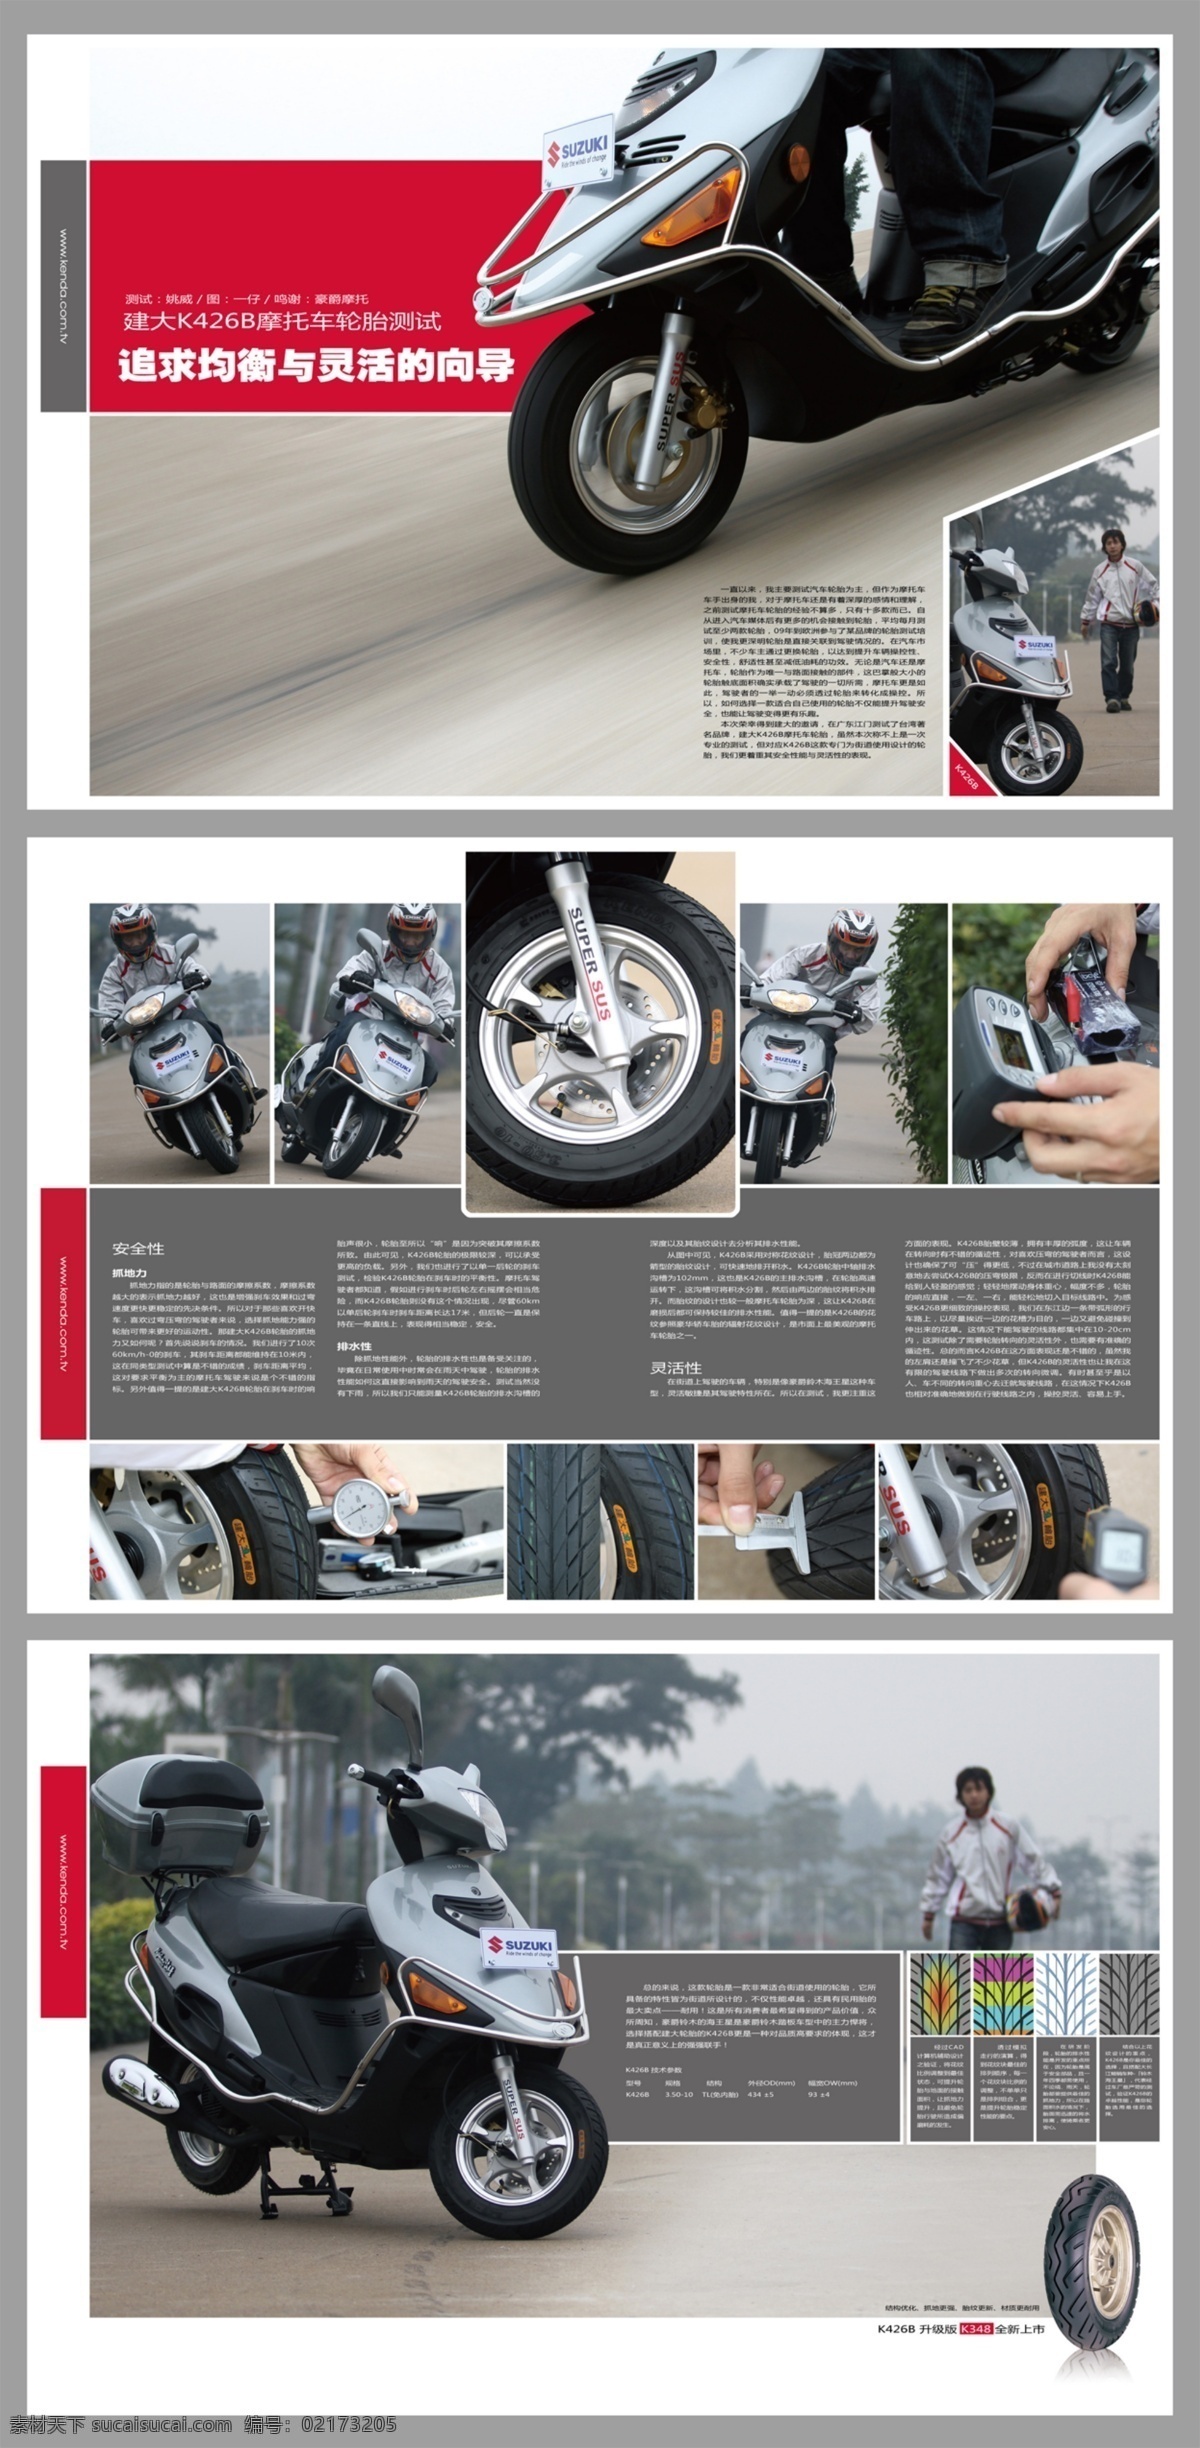 轮胎 测试 模特 摩托车 安全性 抓地性 灵活性 排水性 灵活 均衡 原创设计 原创海报